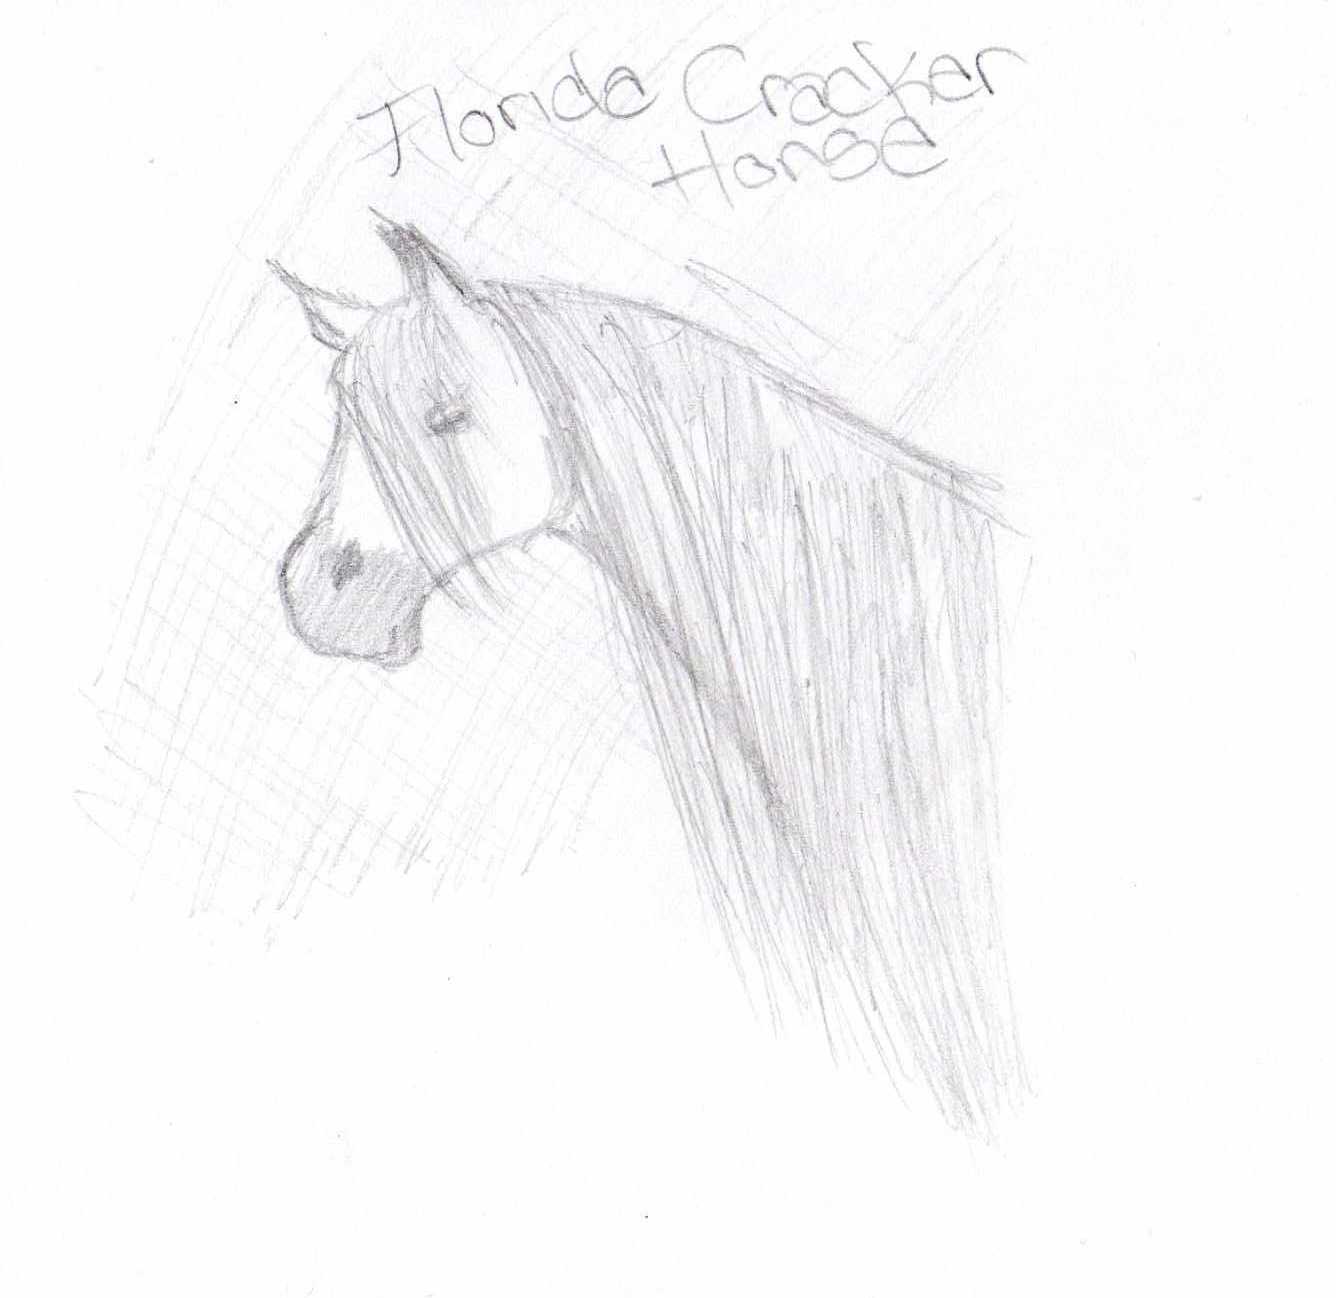 Florida Cracker Horse by wild_spirit